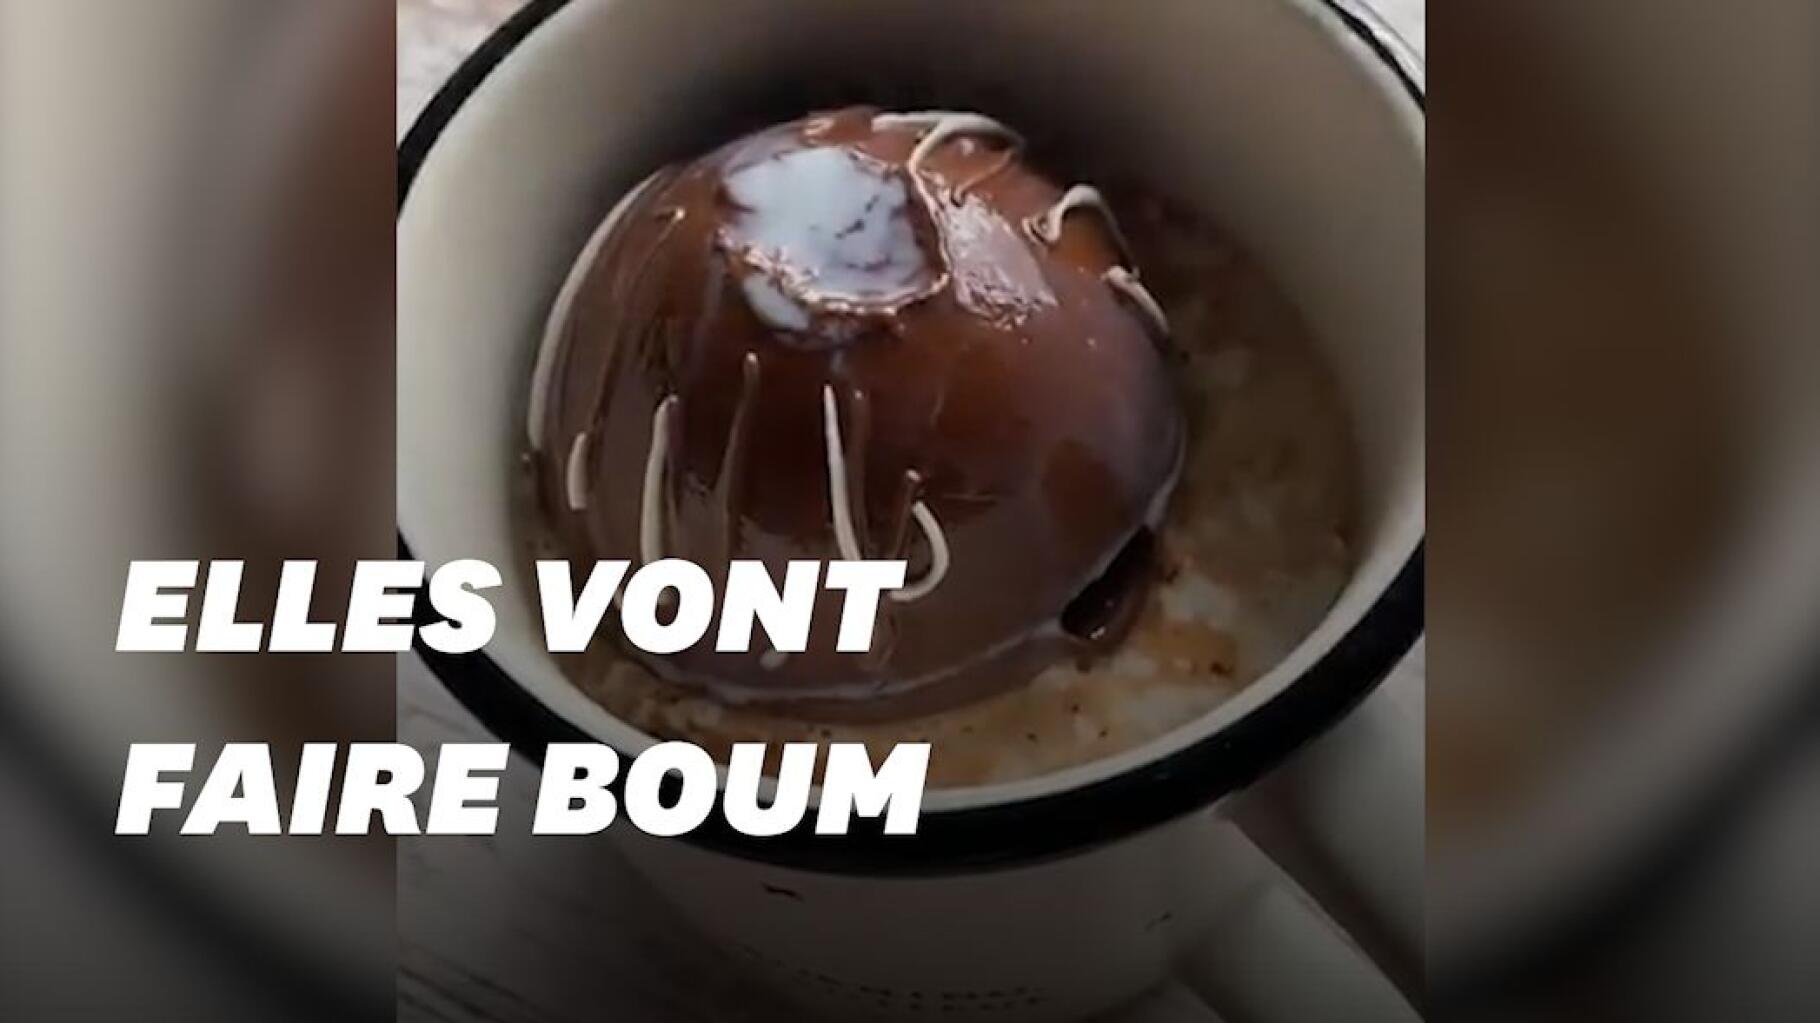 Fondez pour une bombe pour chocolat chaud, LA nouvelle tendance